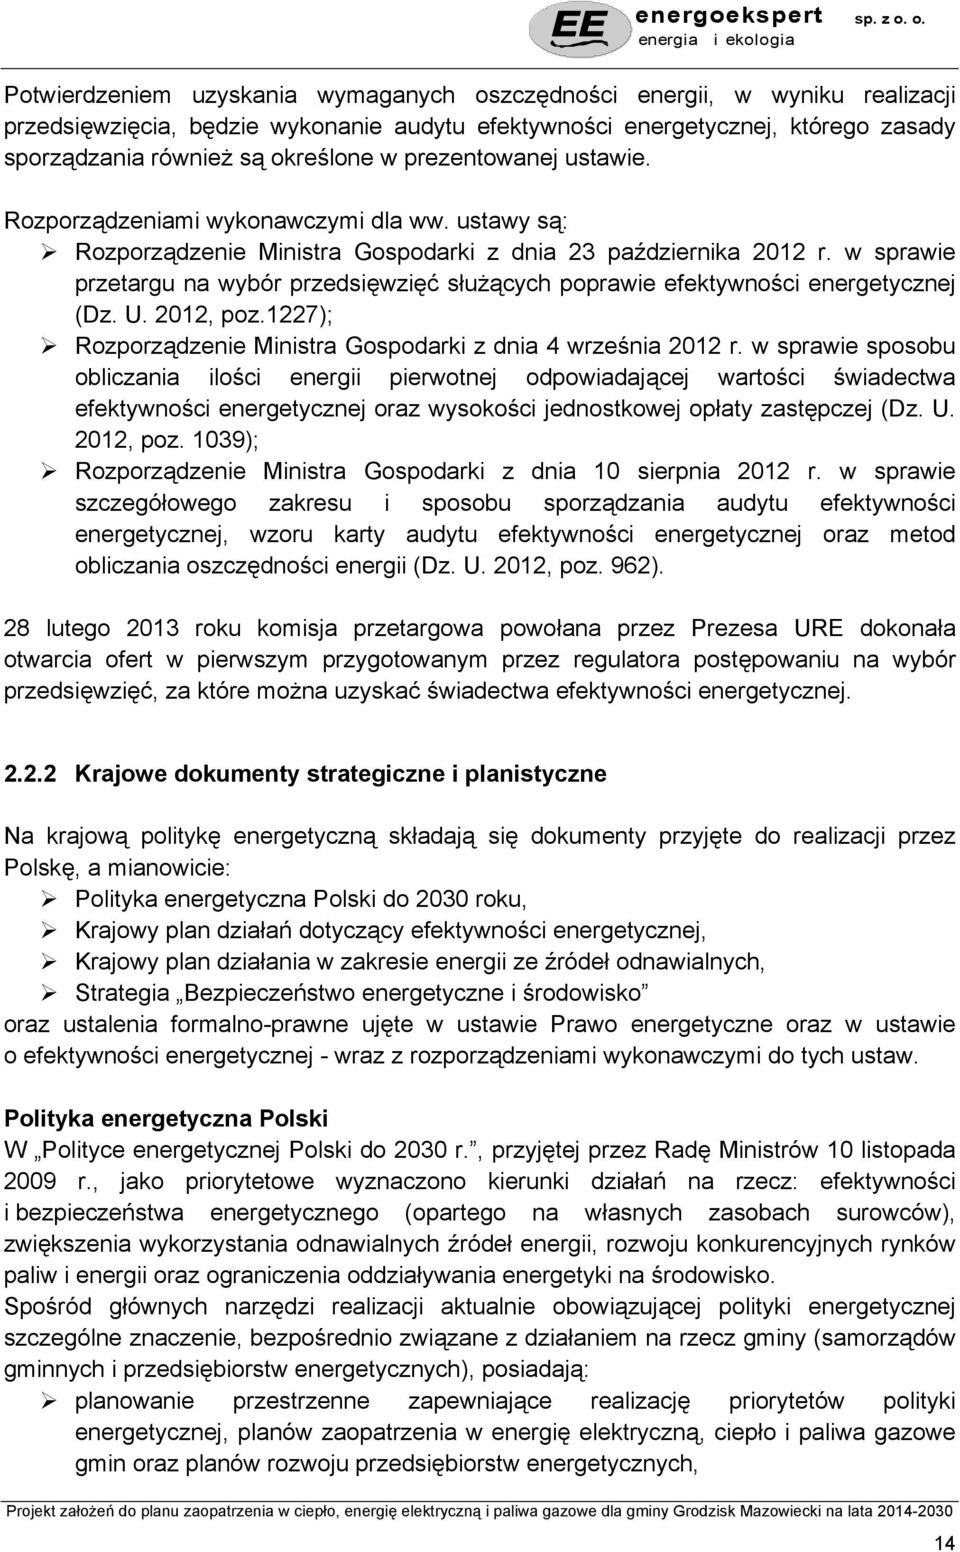 w sprawie przetargu na wybór przedsięwzięć służących poprawie efektywności energetycznej (Dz. U. 2012, poz.1227); Rozporządzenie Ministra Gospodarki z dnia 4 września 2012 r.